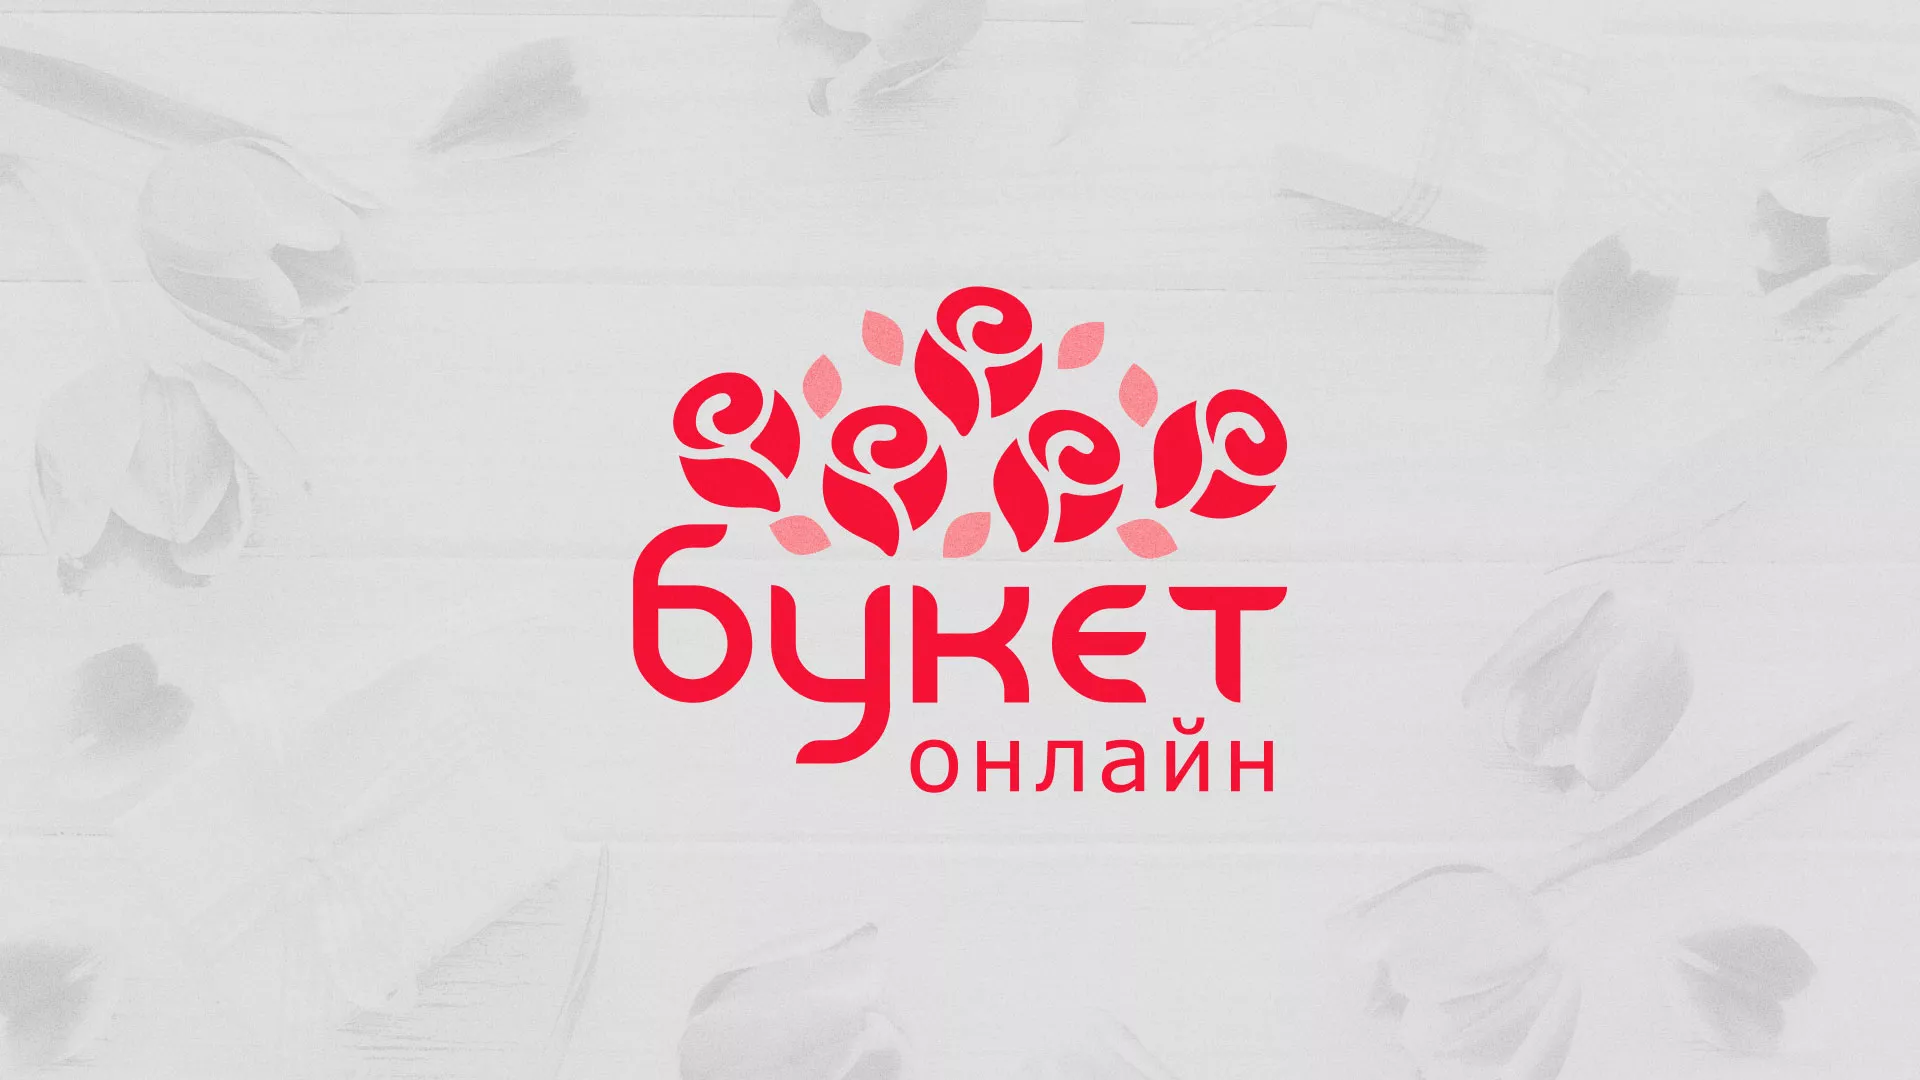 Создание интернет-магазина «Букет-онлайн» по цветам в Орехово-Зуево